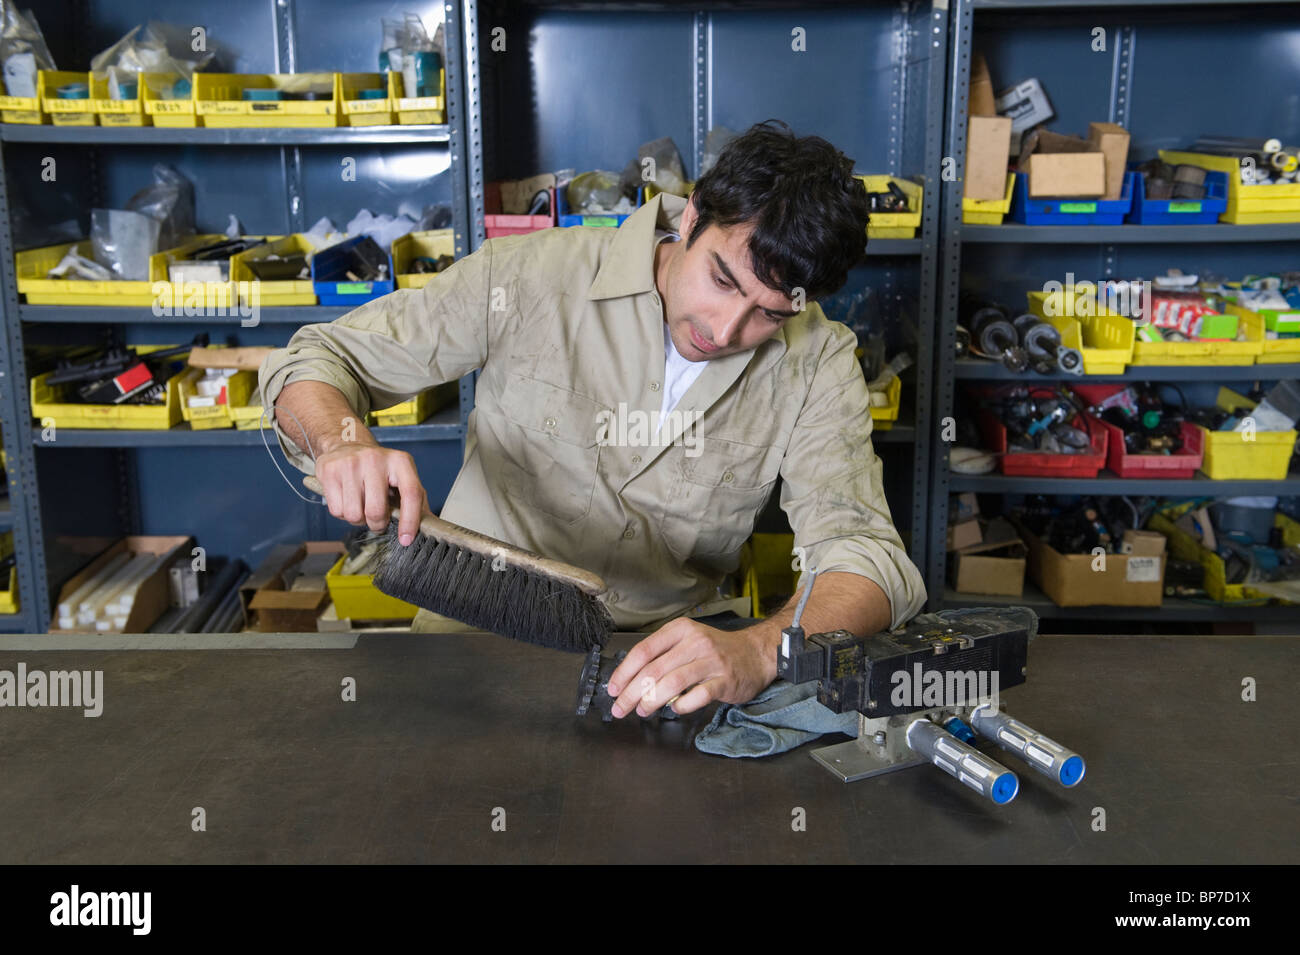 Mann in der Werkstatt mit Werkzeugen Stockfoto